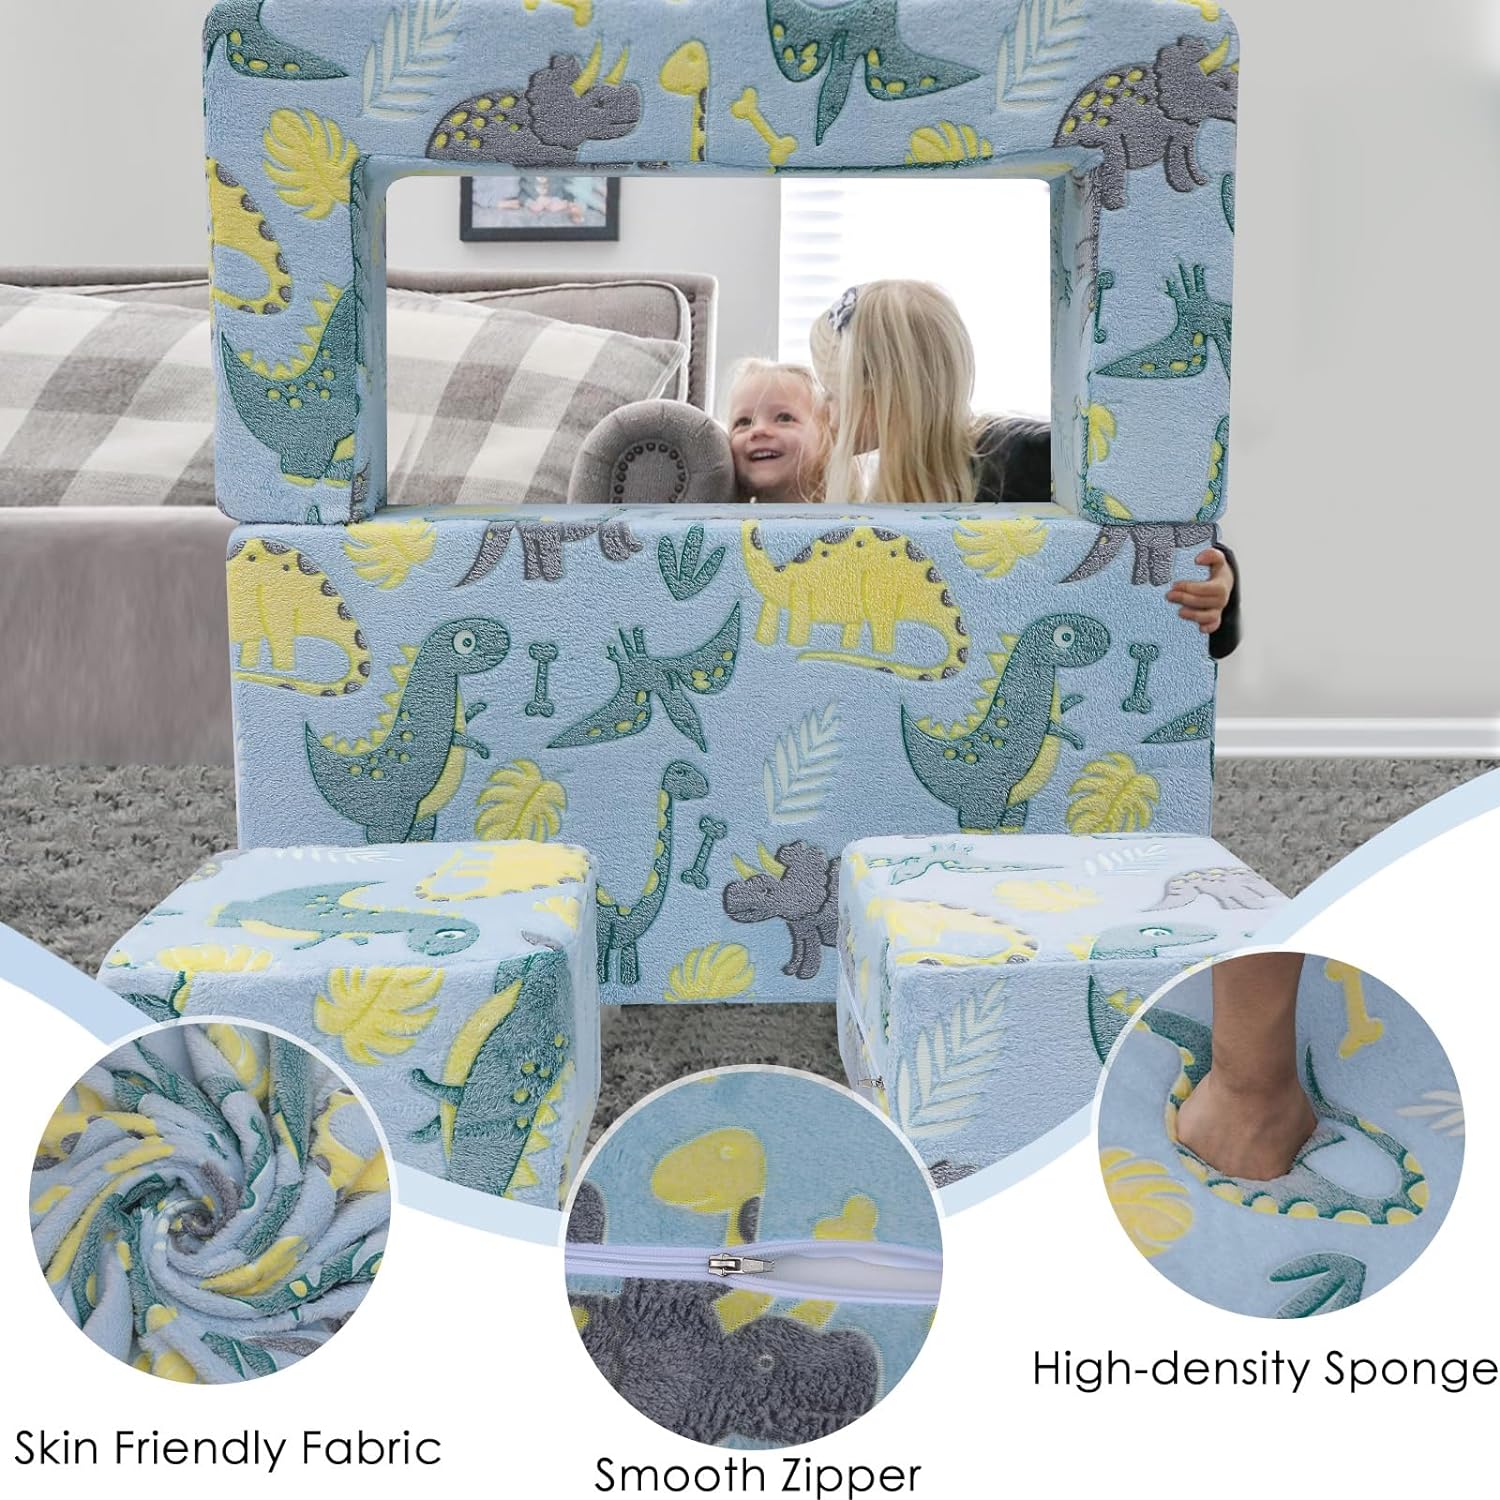 Sofá infantil para niños, sofá plegable de dinosaurio que brilla en la